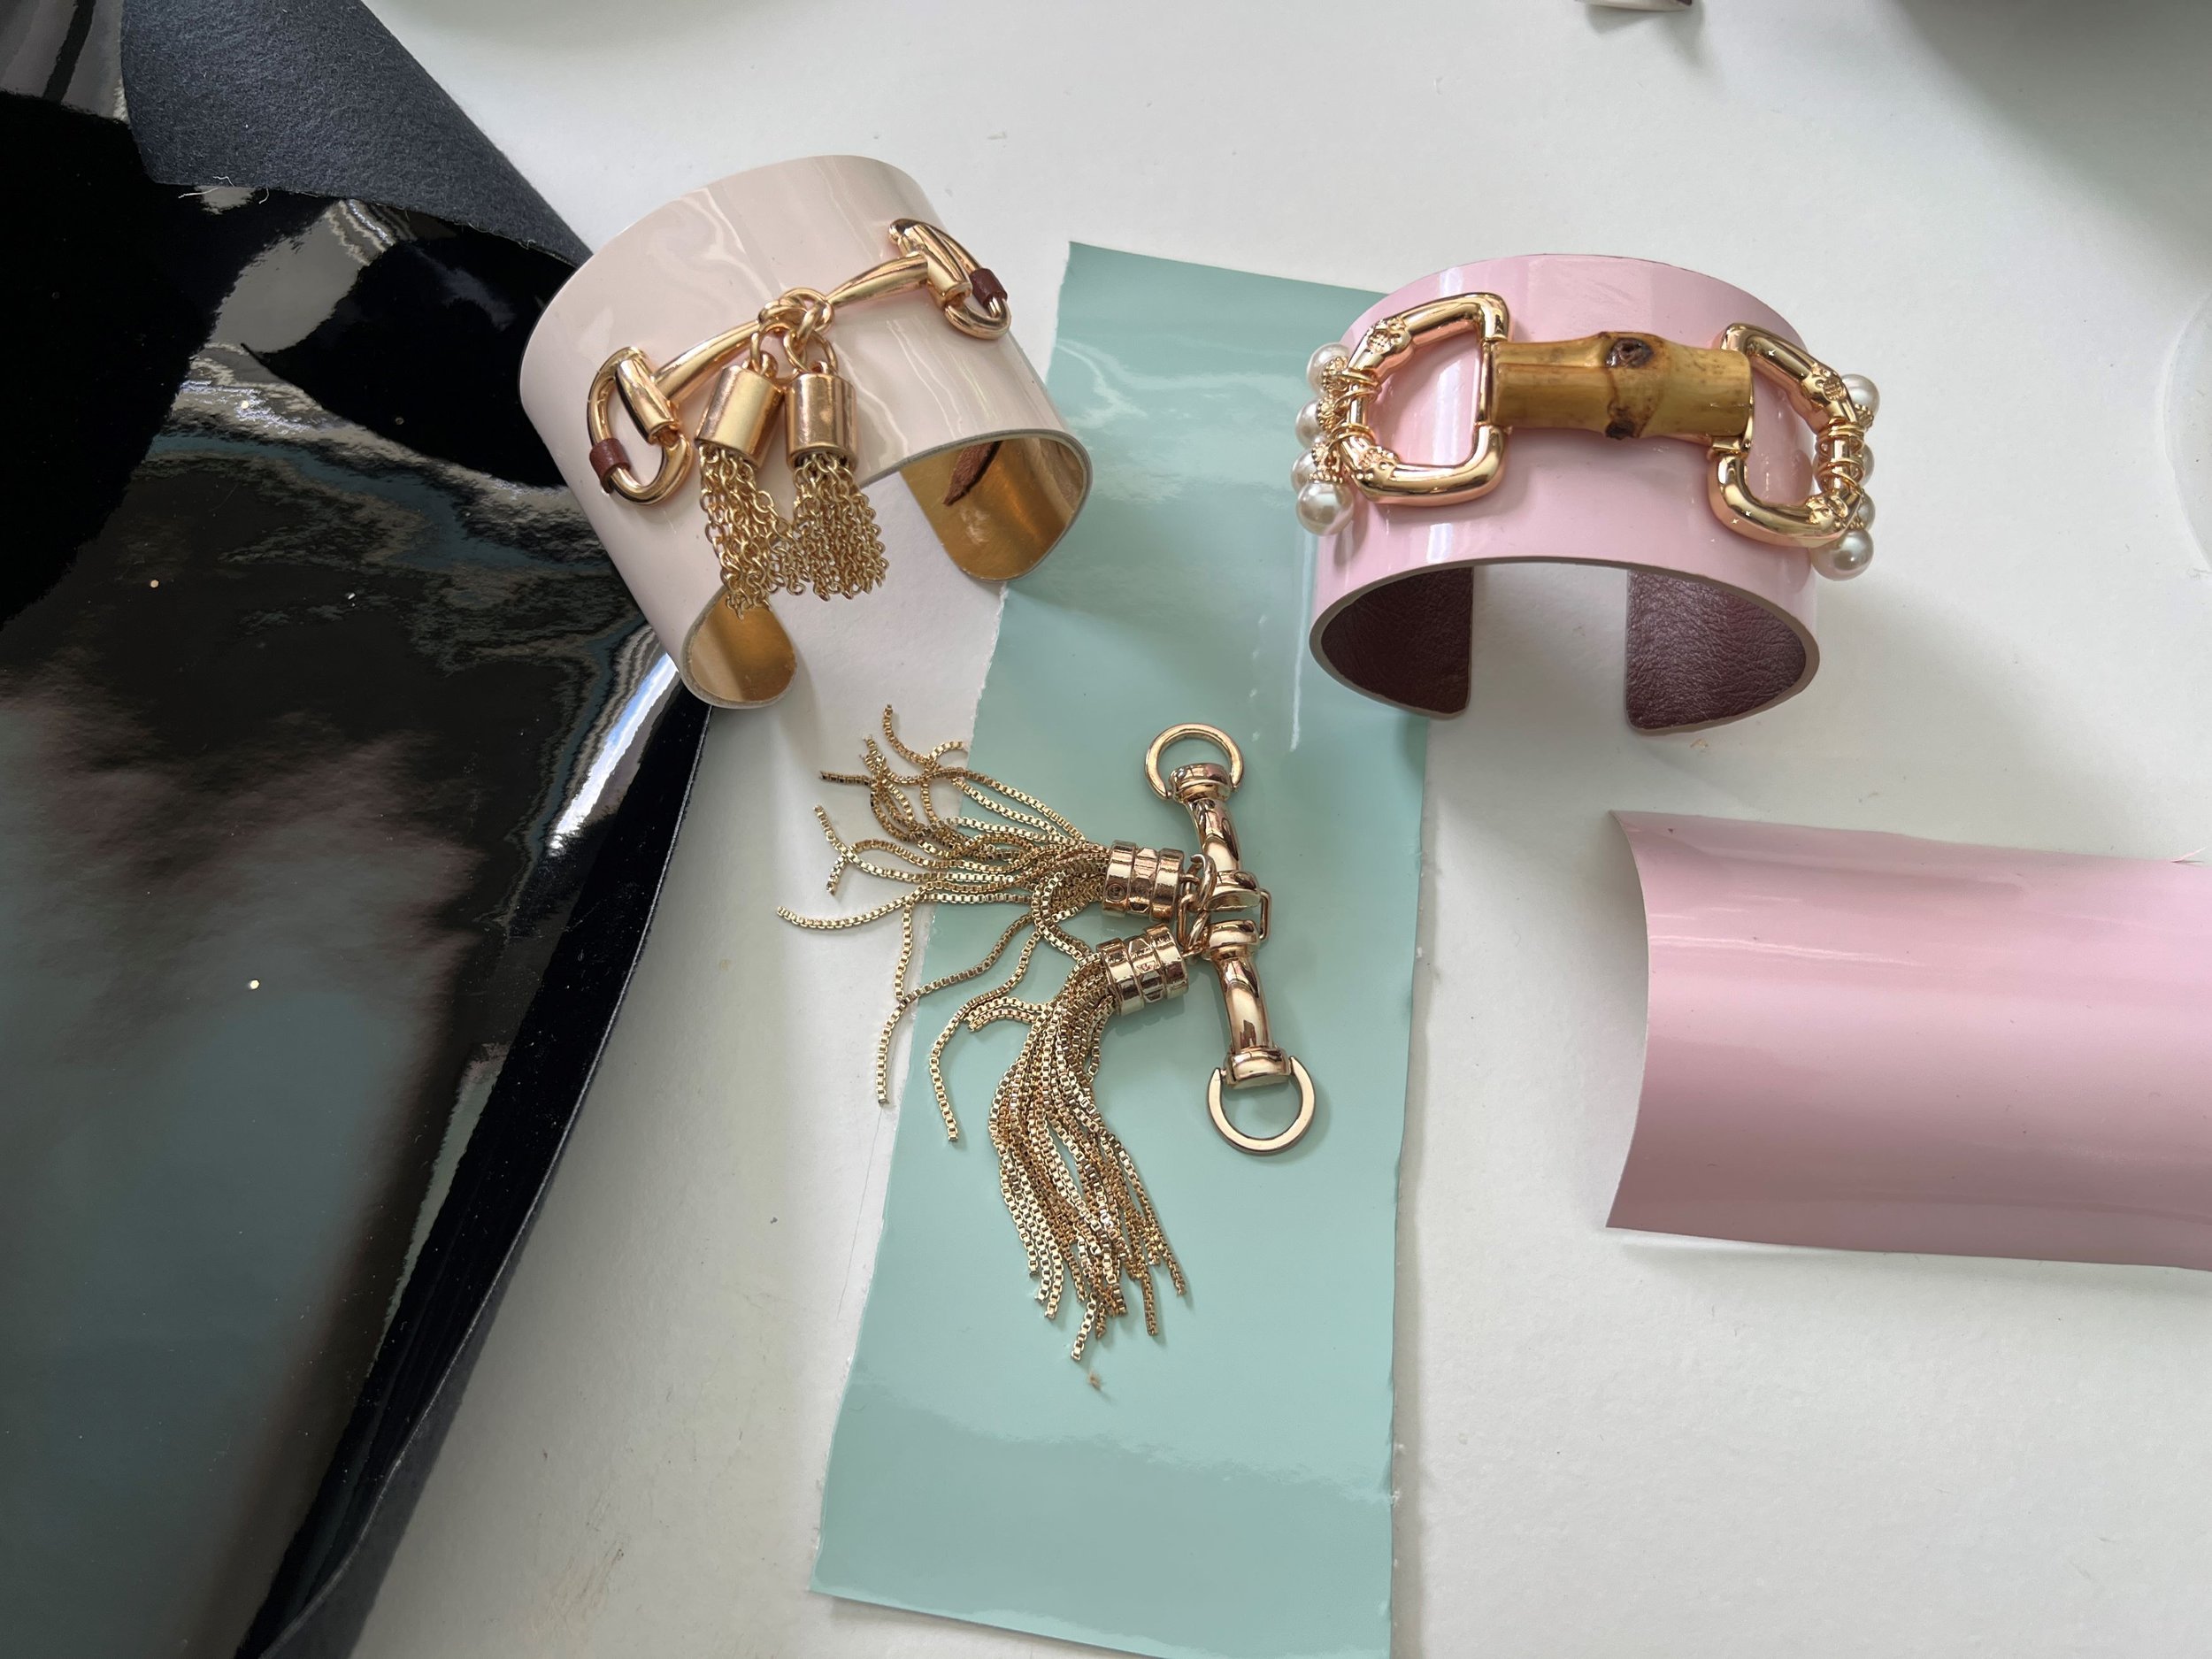 Cuff bracelet DIY — artworkerprojects